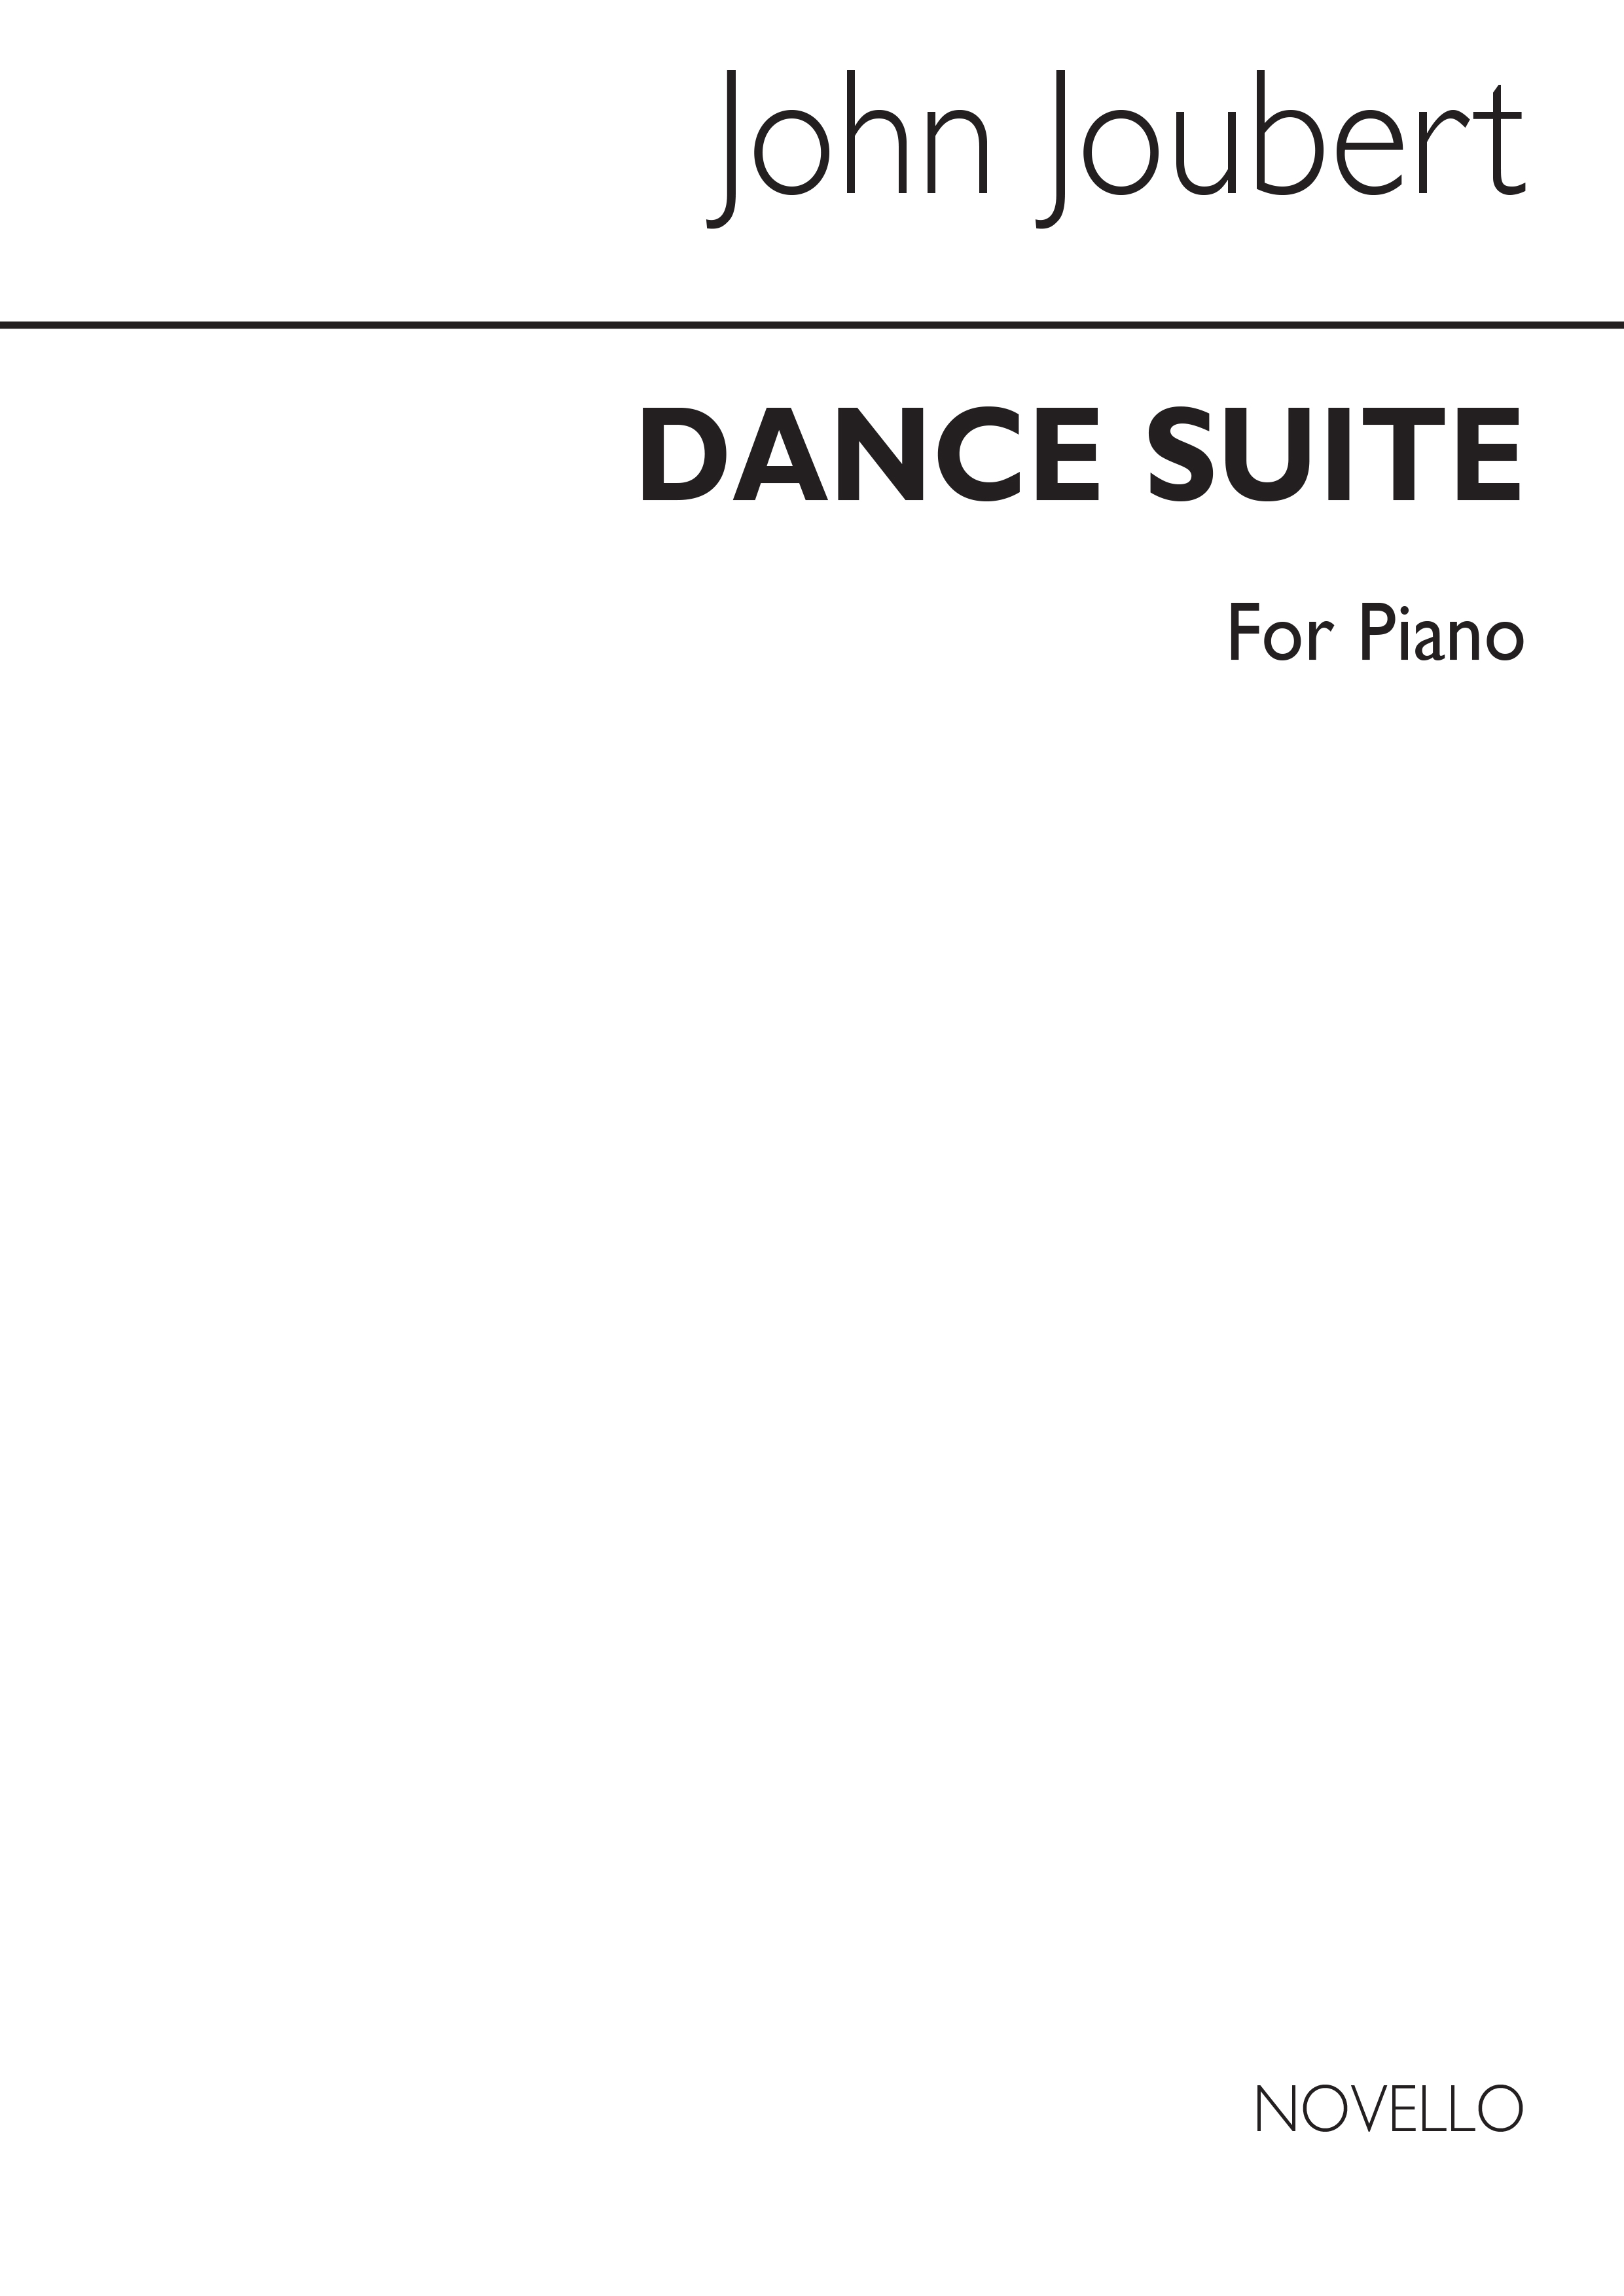 John Joubert: Dance Suite Op.21 For Piano